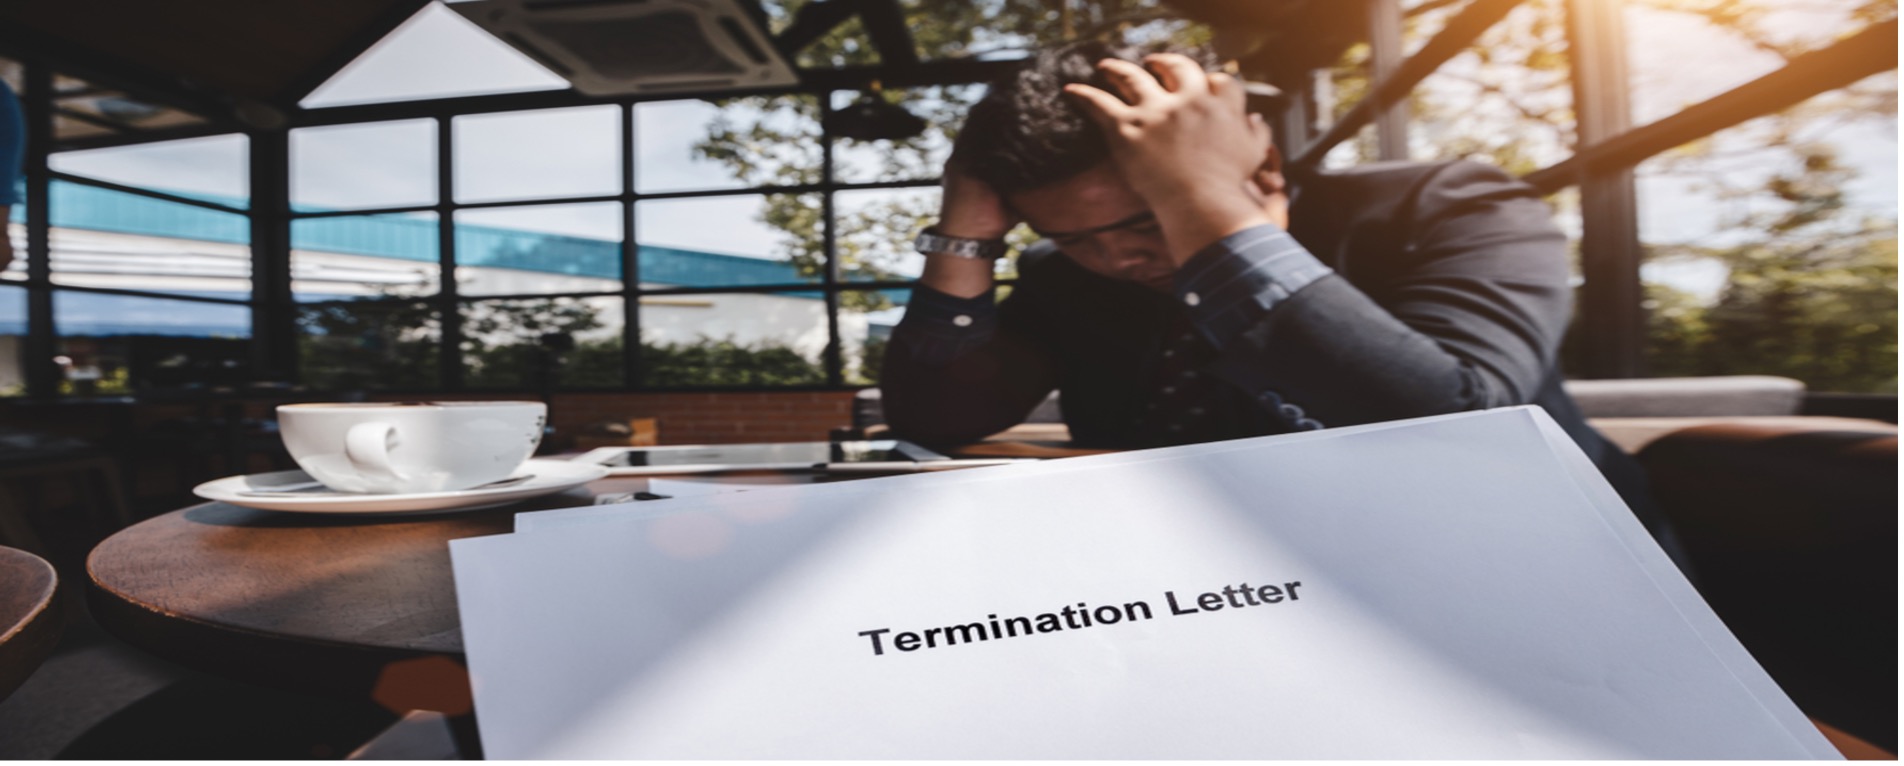 Termination_letter.jpg